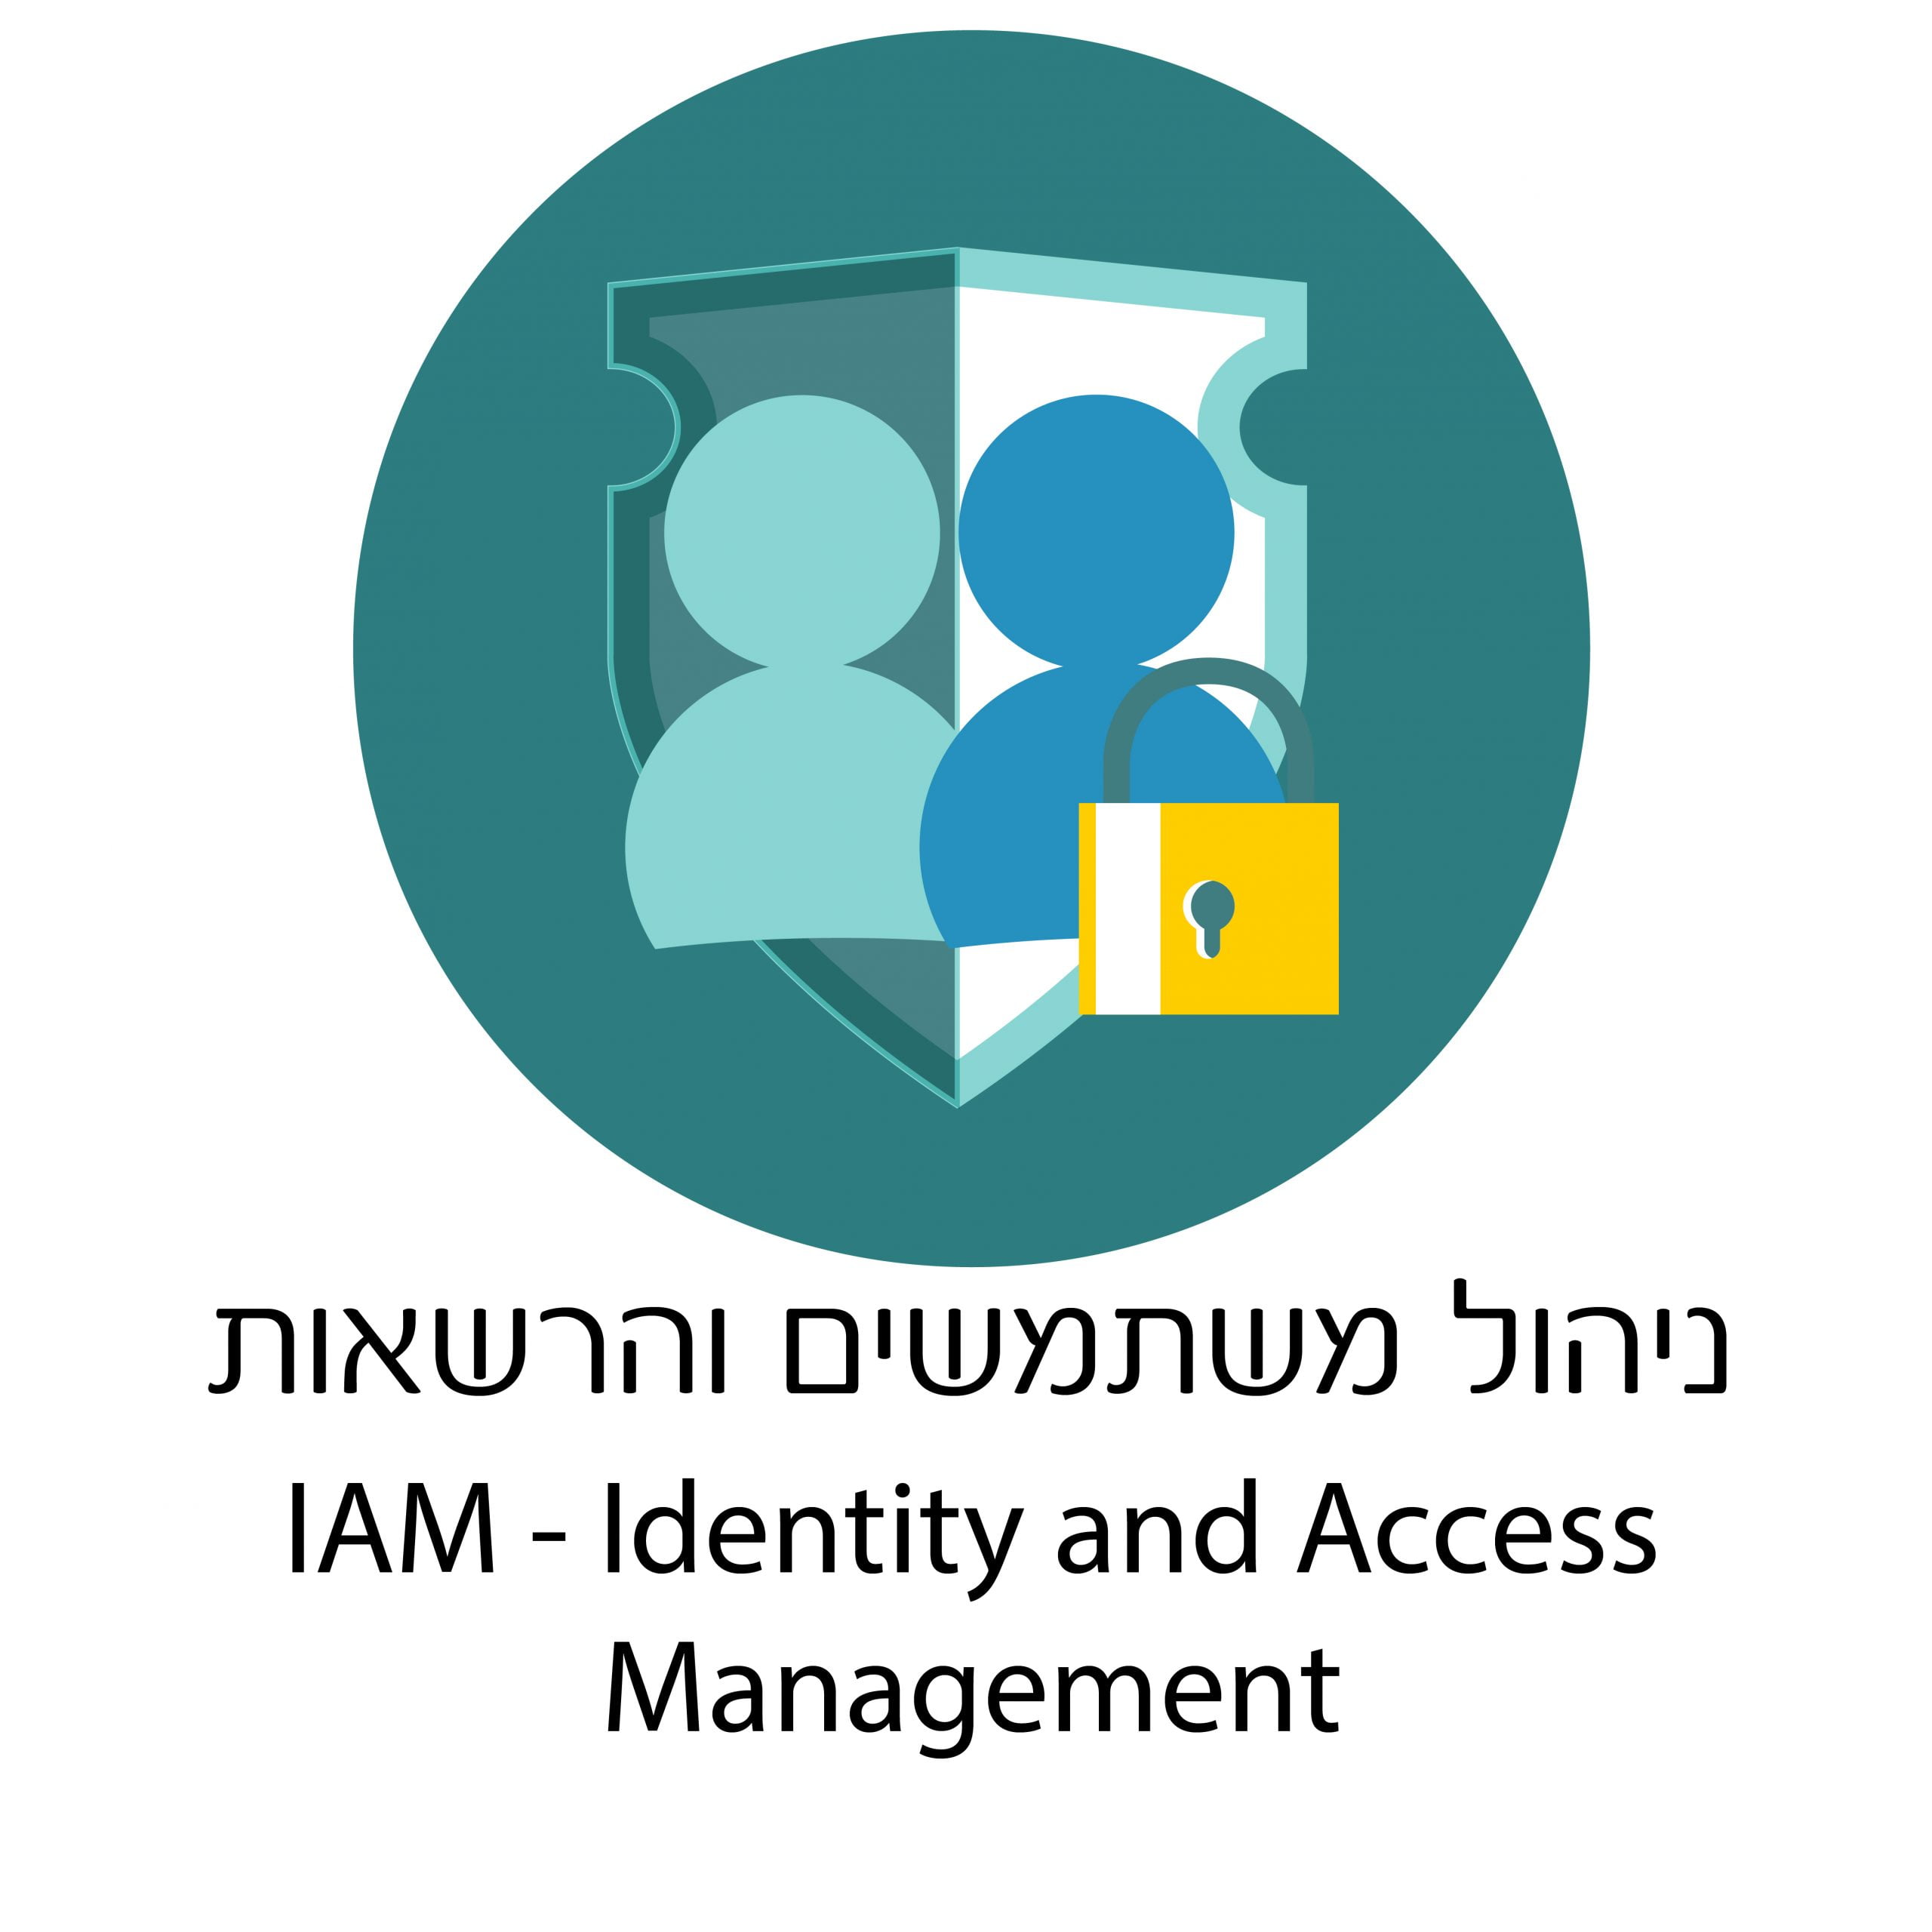 ניהול משתמשים והרשאות IAM IDENTITY AND ACCESS MANAGAGEMENT